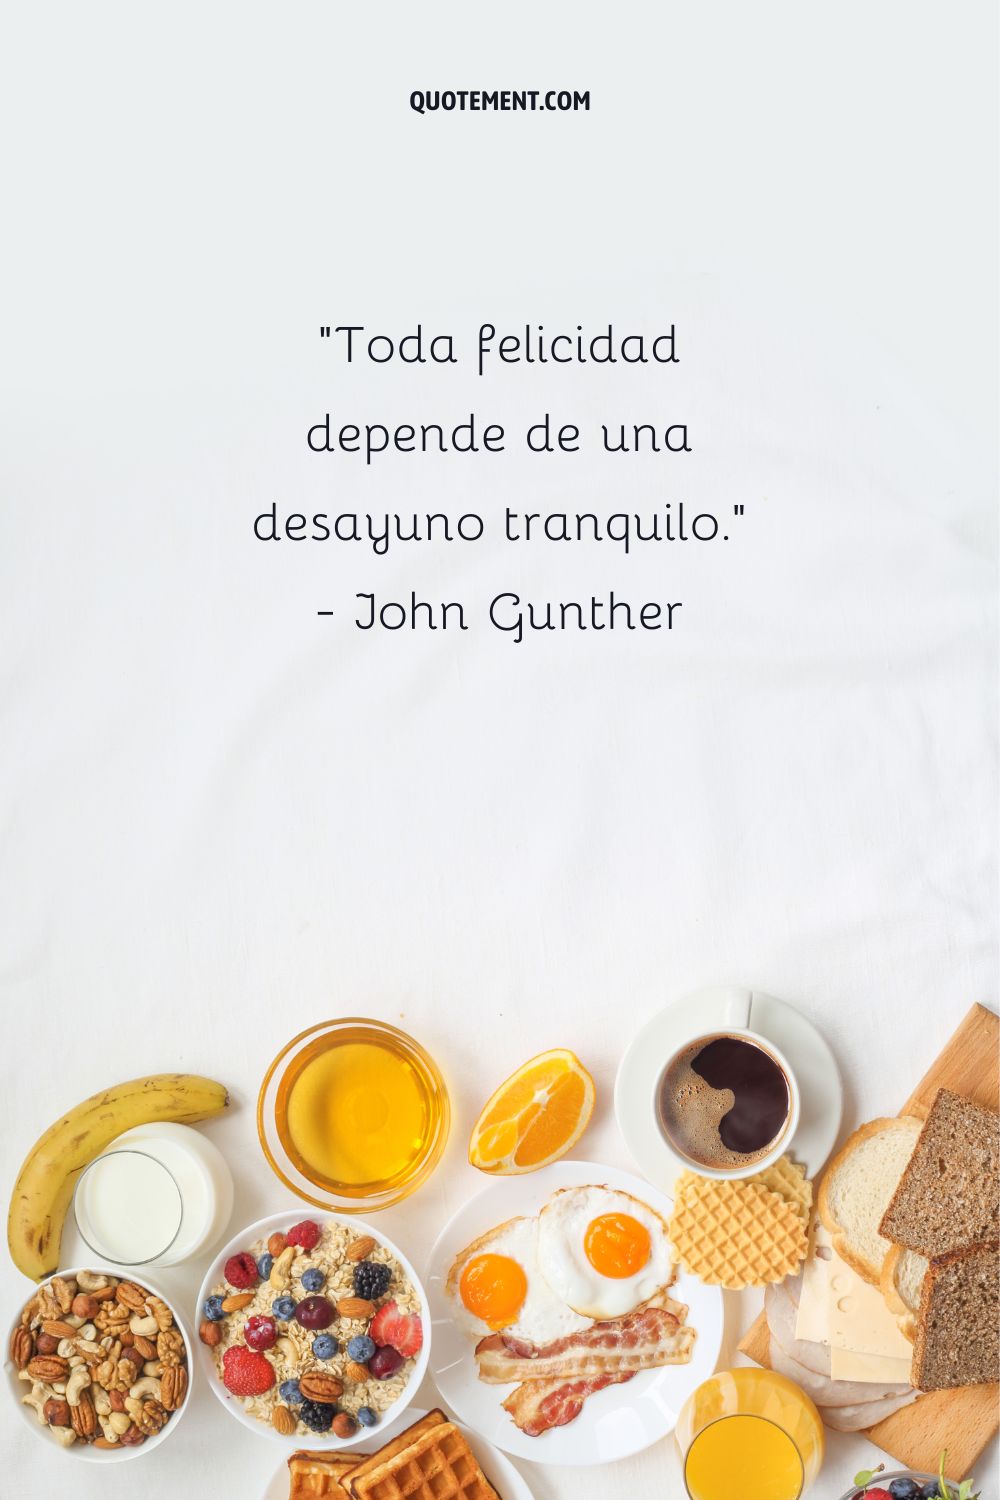 "Toda felicidad depende de un desayuno pausado". - John Gunther